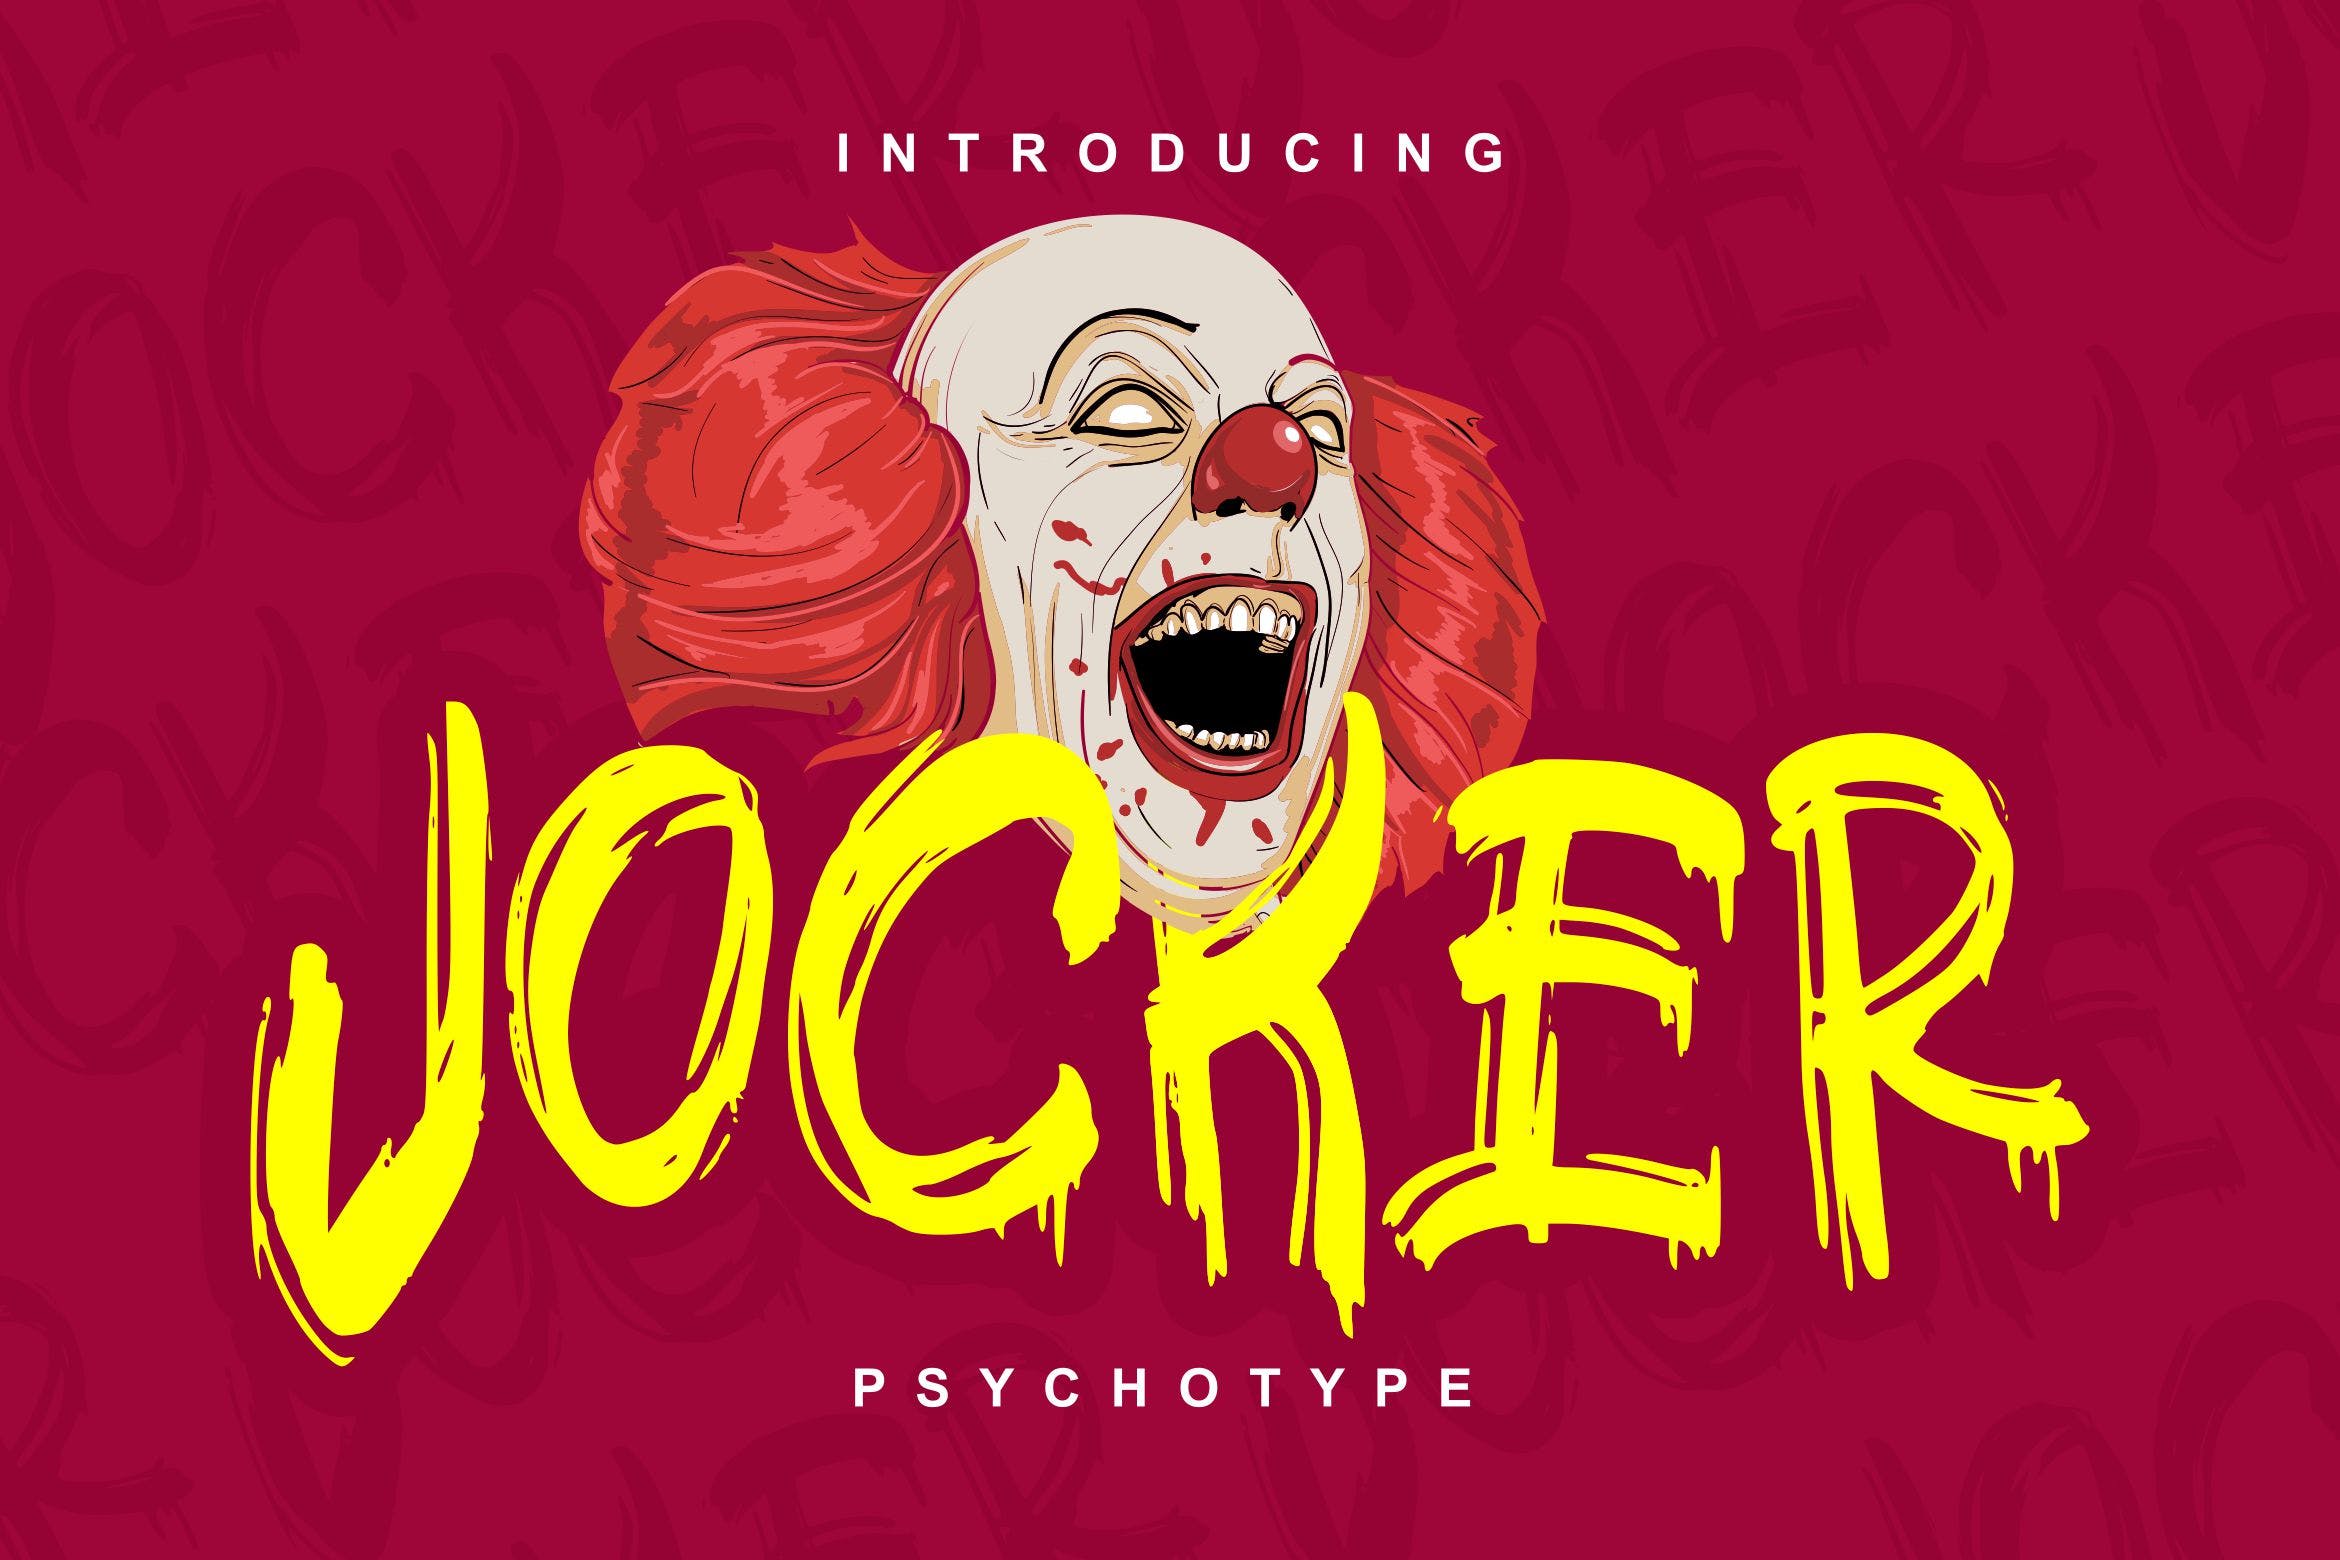 极具个性的英文笔刷装饰字体第一素材精选 Jocker | Psychotype Font Theme插图